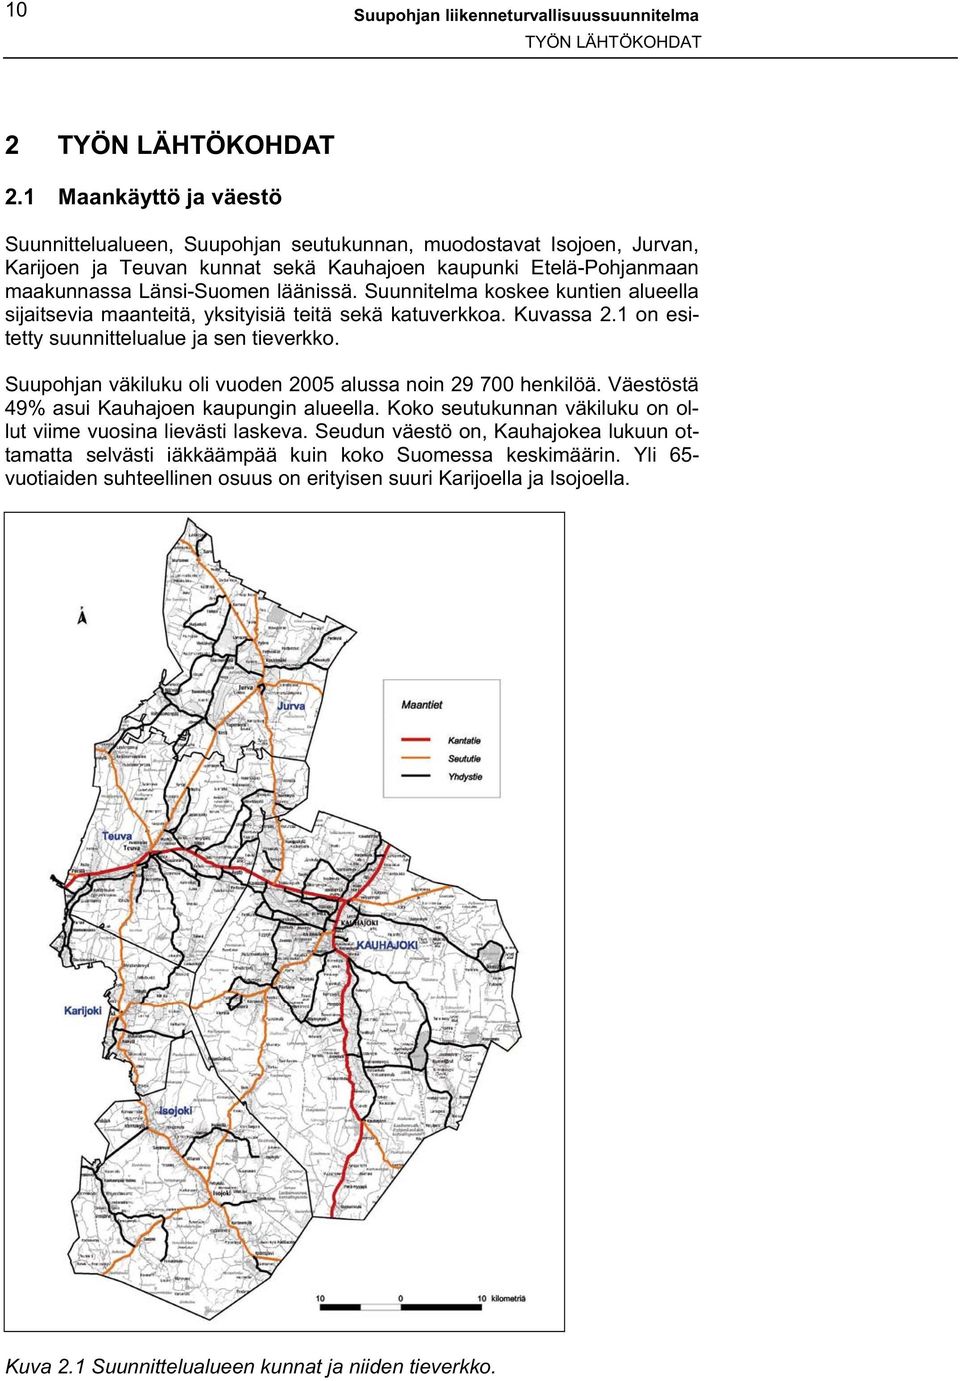 Suunnitelma koskee kuntien alueella sijaitsevia maanteitä, yksityisiä teitä sekä katuverkkoa. Kuvassa 2.1 on esitetty suunnittelualue ja sen tieverkko.